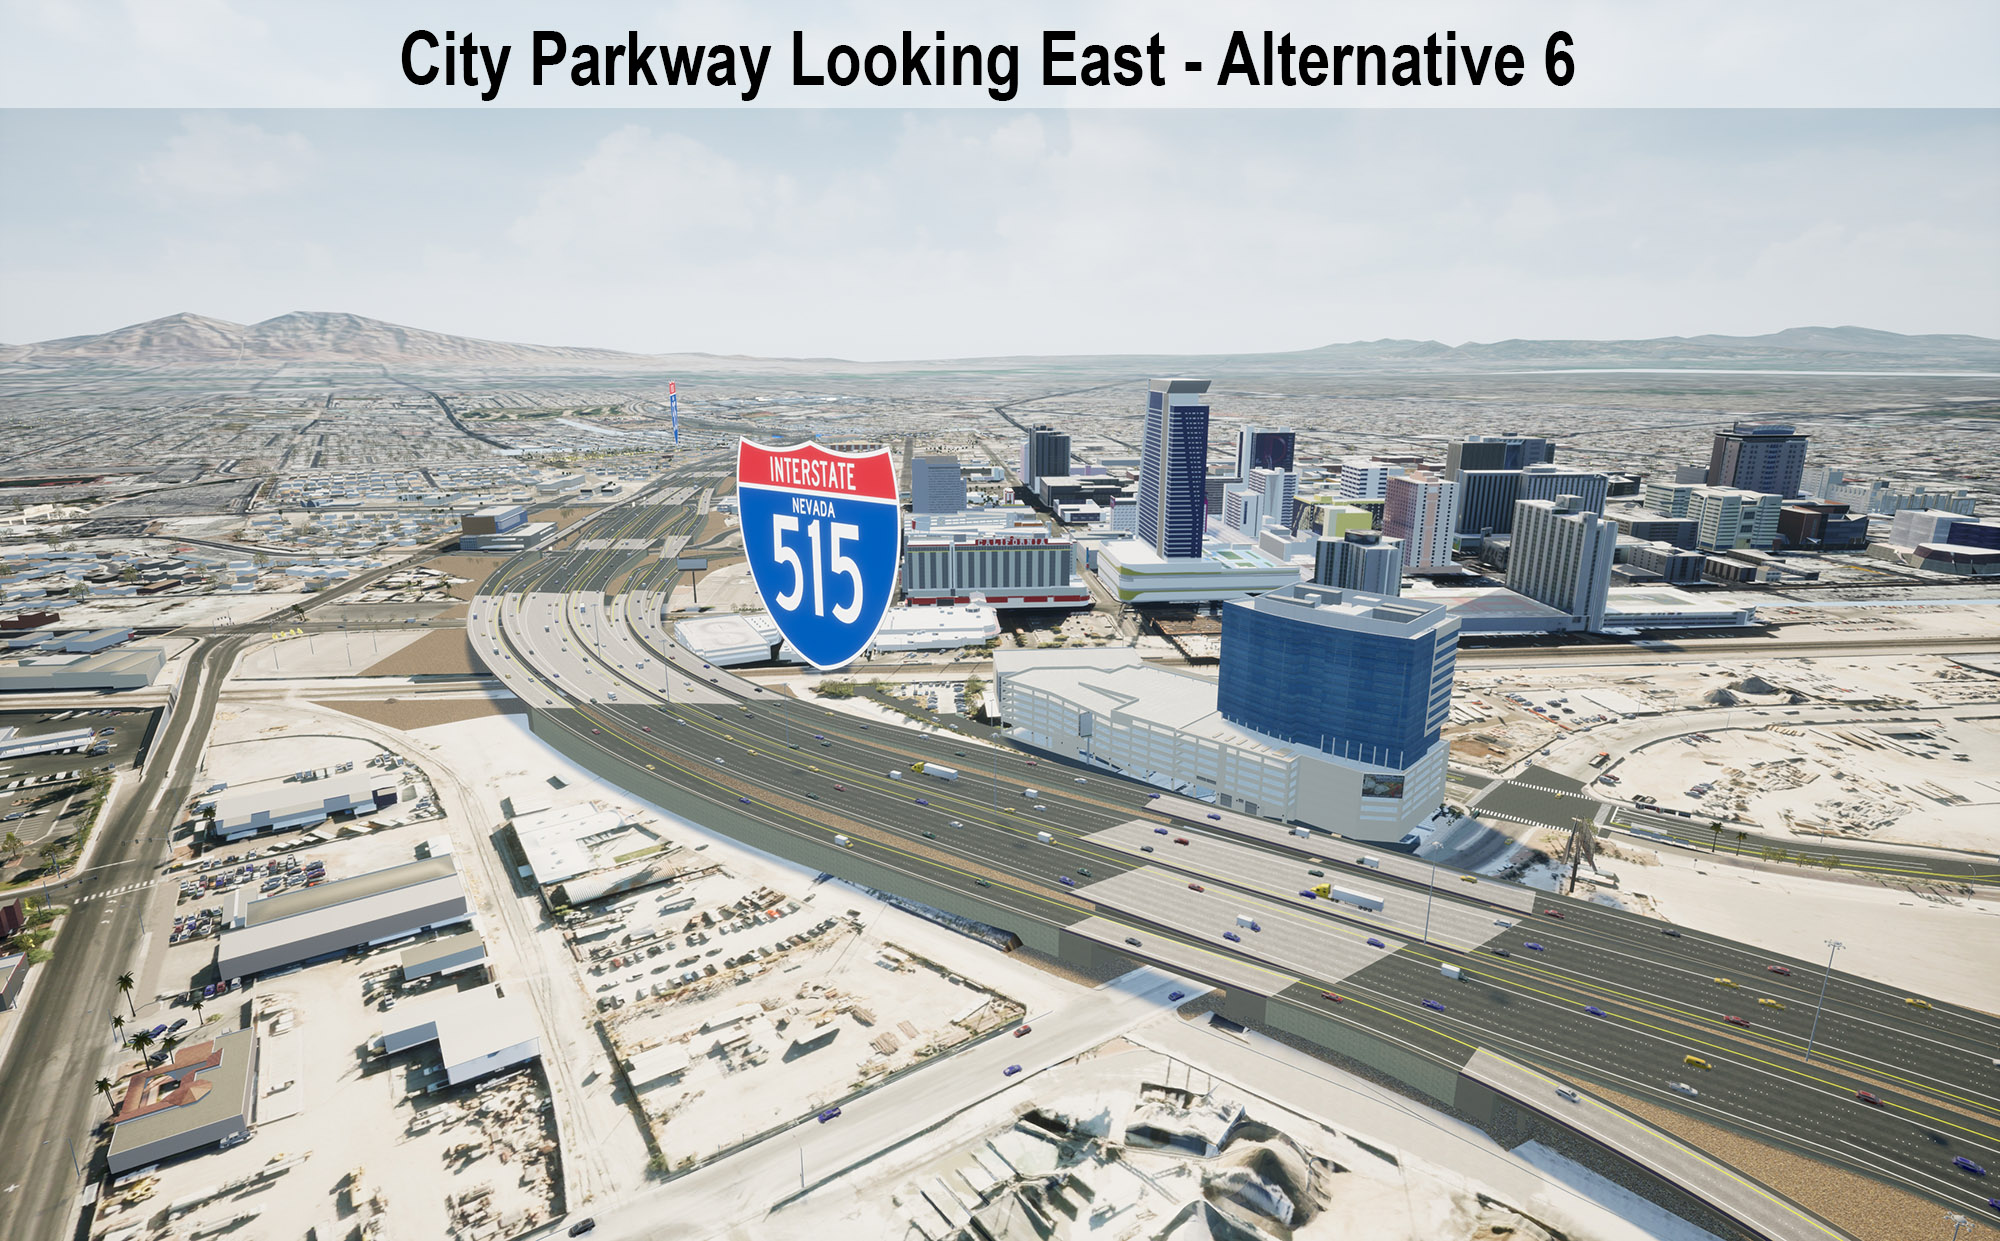 City Parkway Looking East - Alternative 6